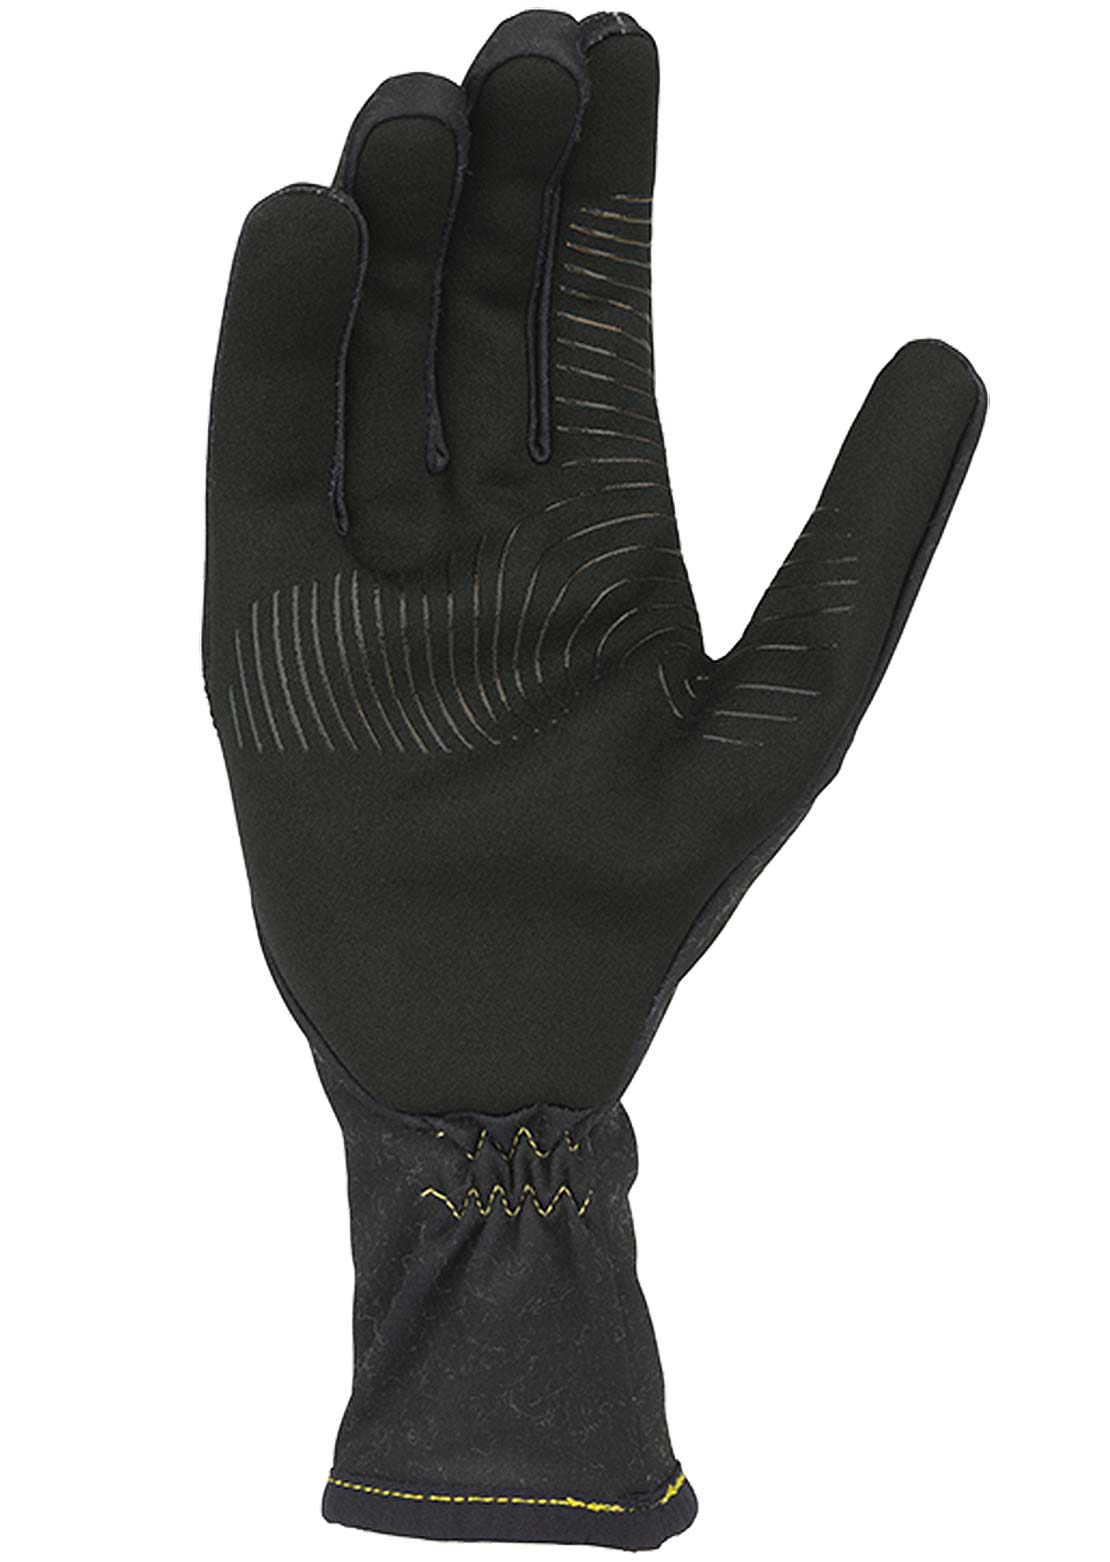 45NRTH Risor Liner Full Finger Mountain Bike Gloves Black